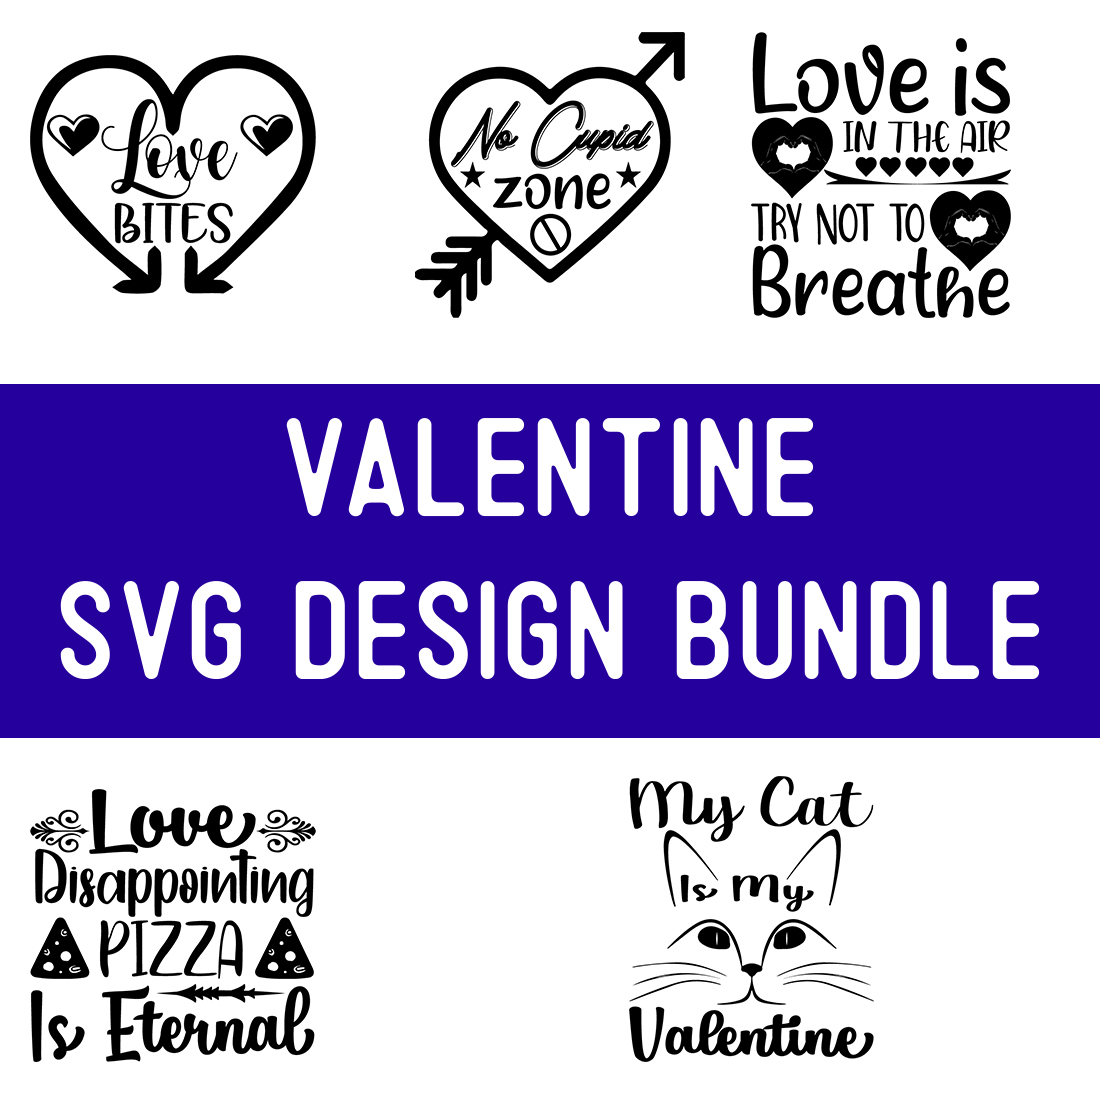 Valentine SVG Design Bundle cover image.